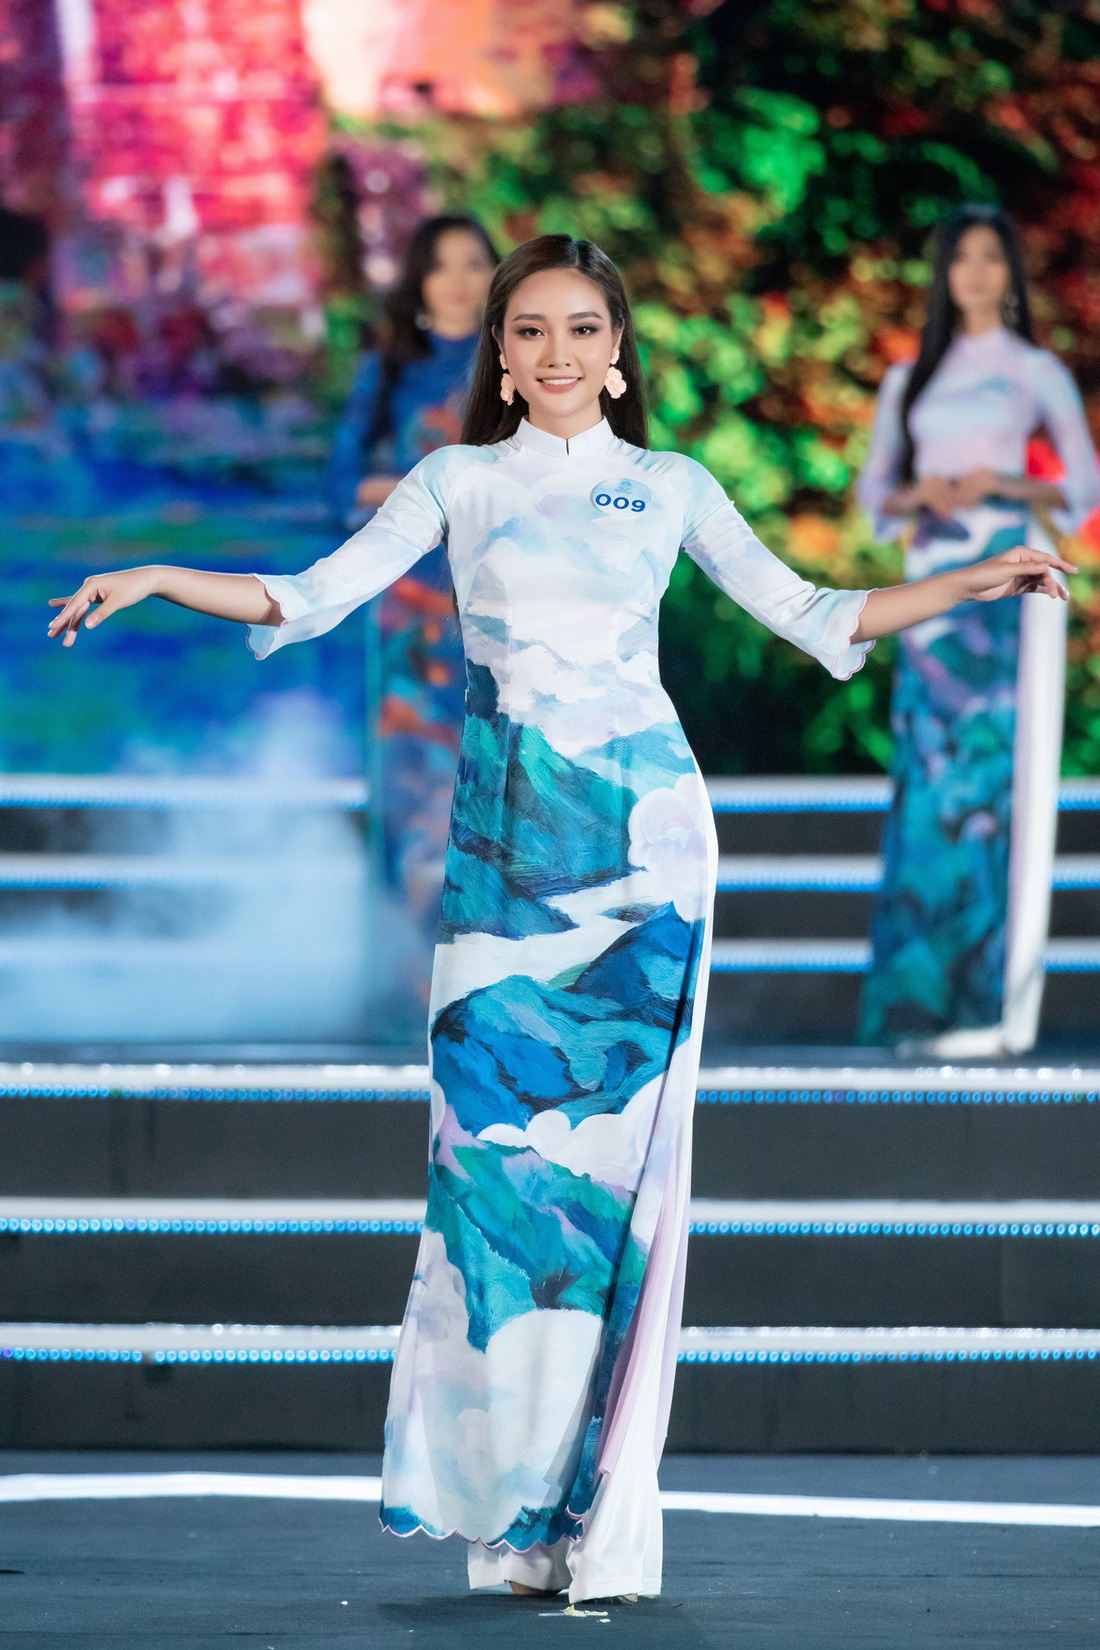 Bộ sưu tập áo dài đèo Hải Vân giúp Lương Thùy Linh đăng quang - Ảnh 5.